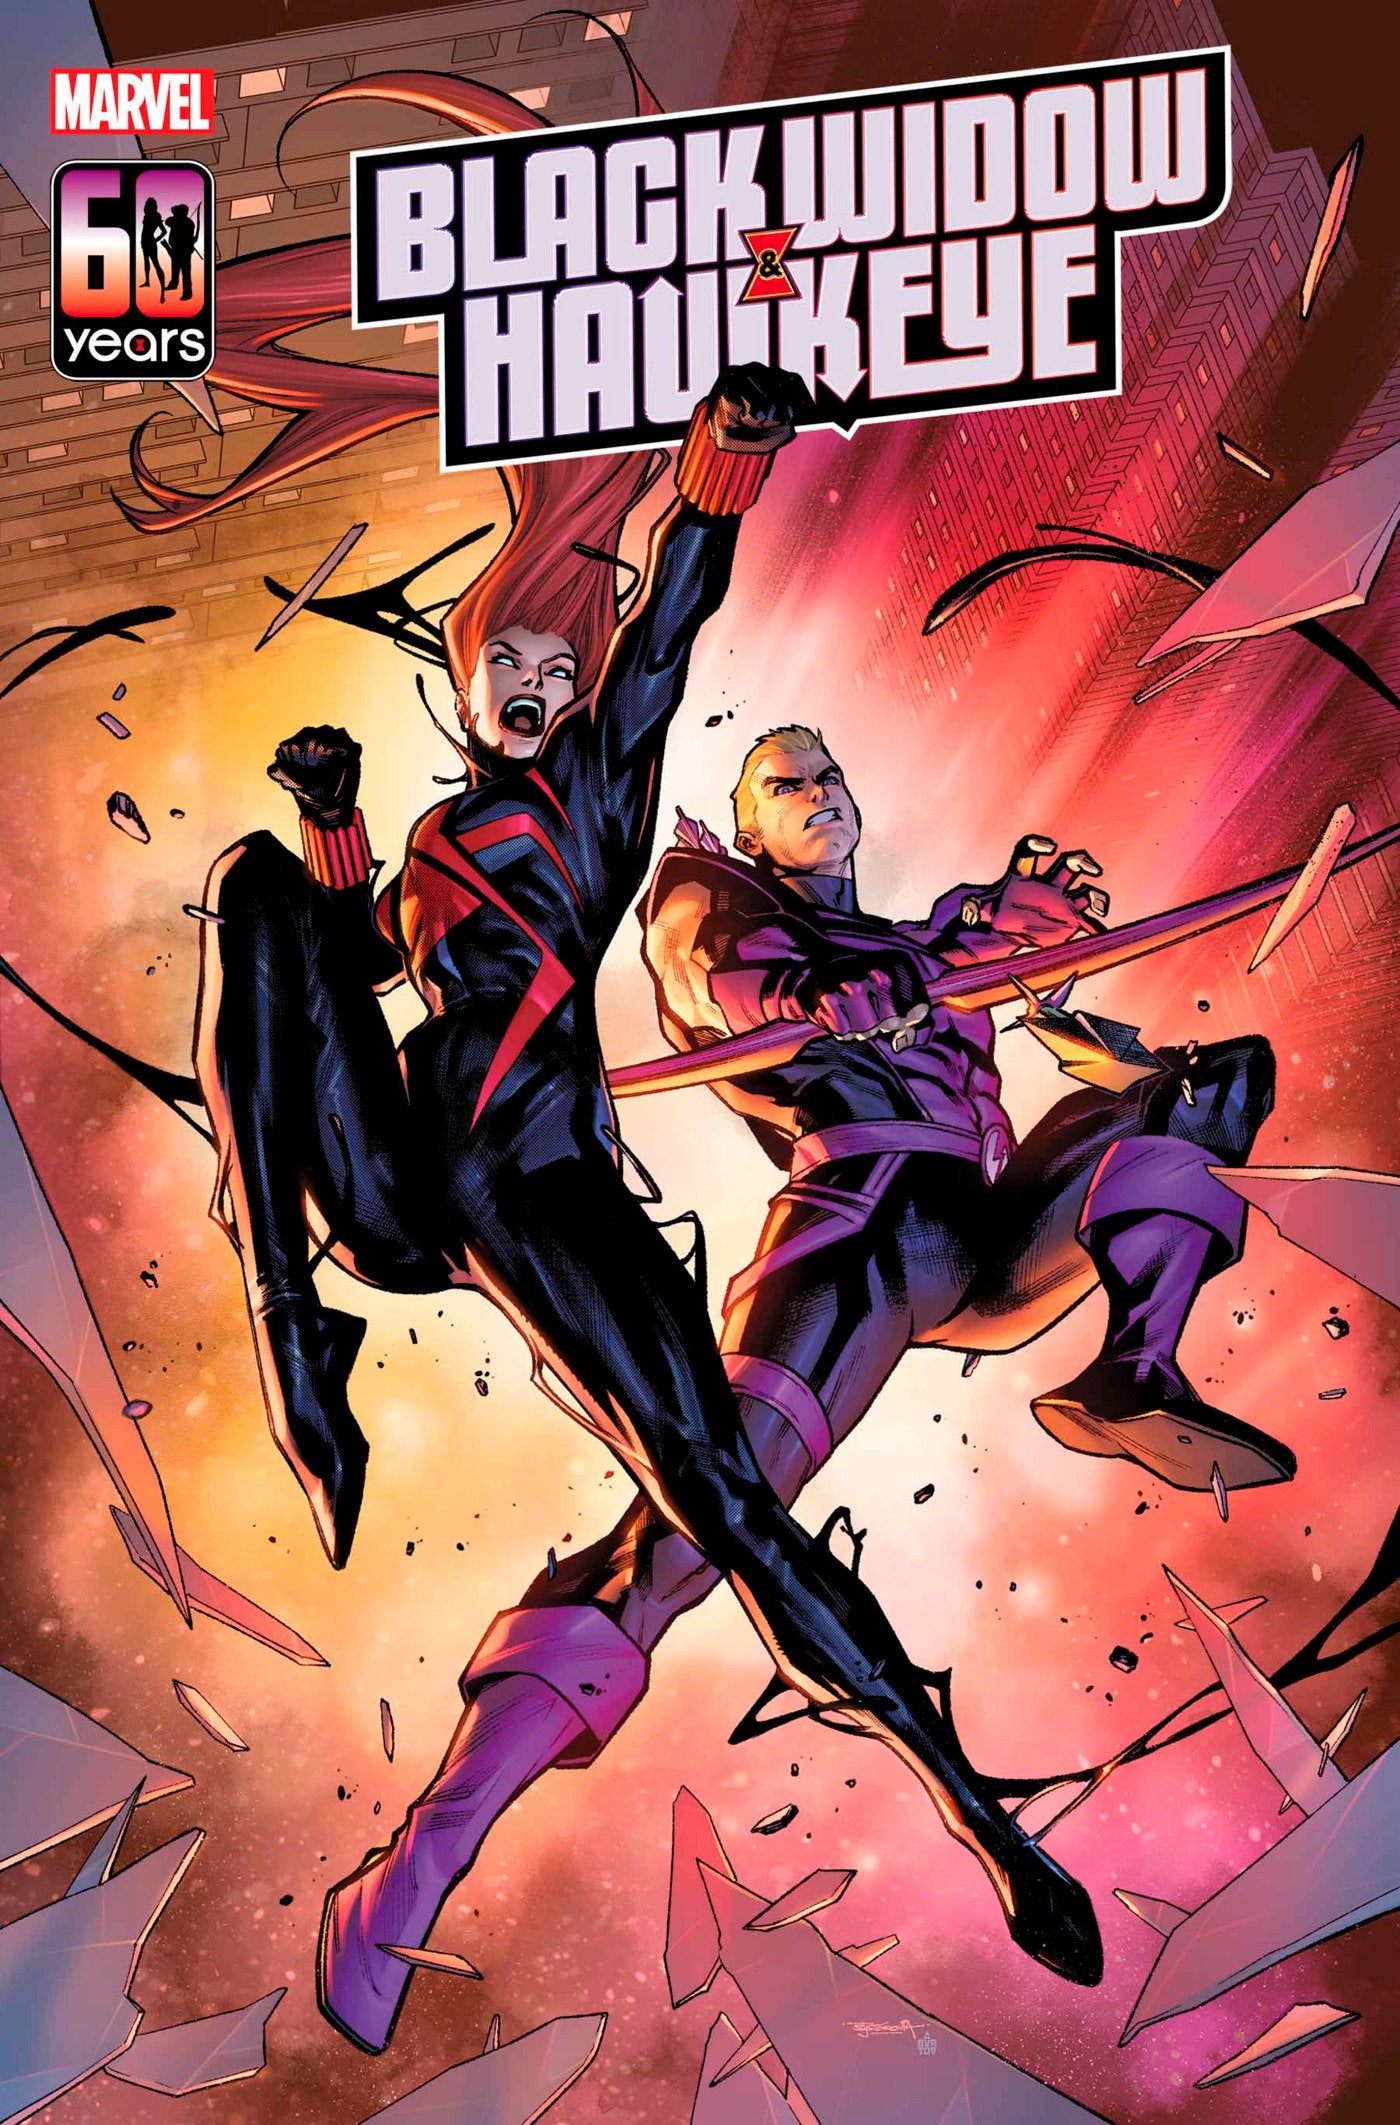 Black Widow & Hawkeye #1